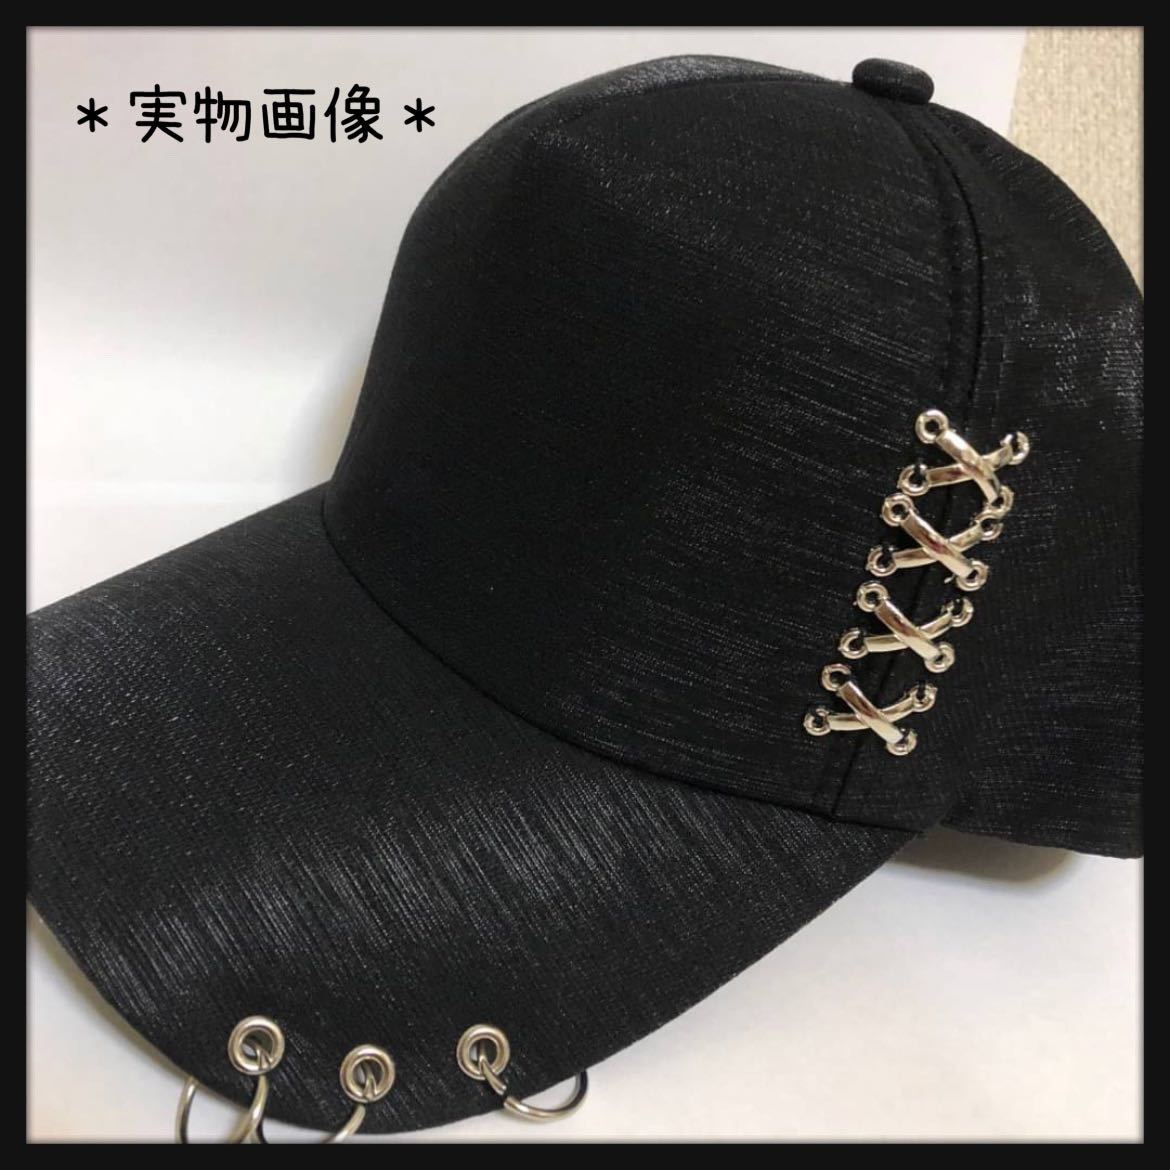 キャップ 帽子 メンズ 黒 韓国 リング ユニセックス レディース 3連